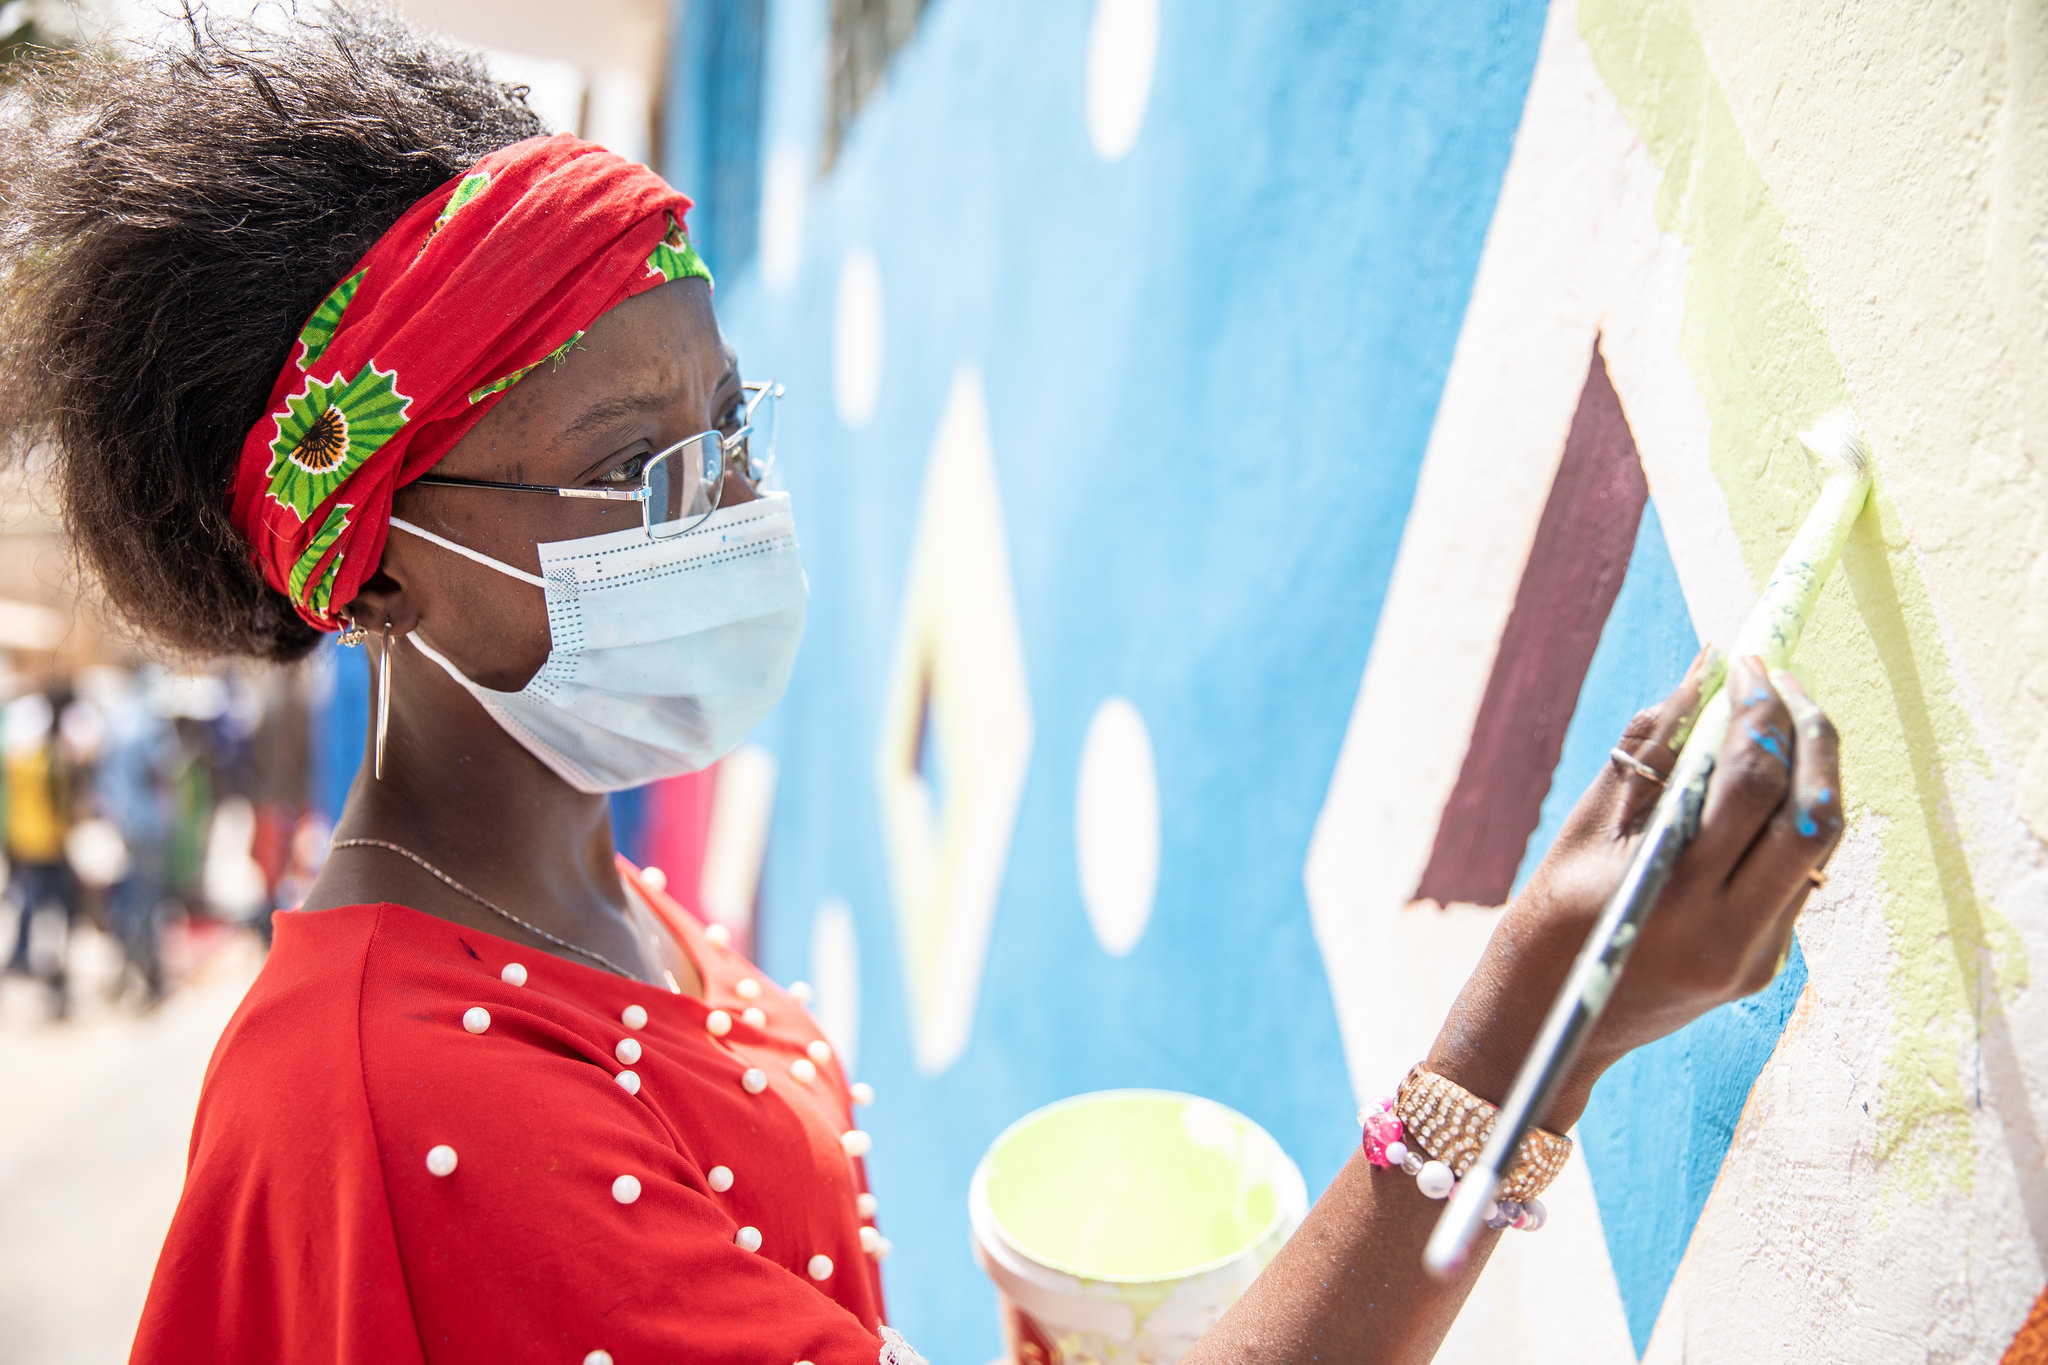 MaM Volunteer in Senegal paints a mural in Dakar. Credits: Amanda Nero/IOM